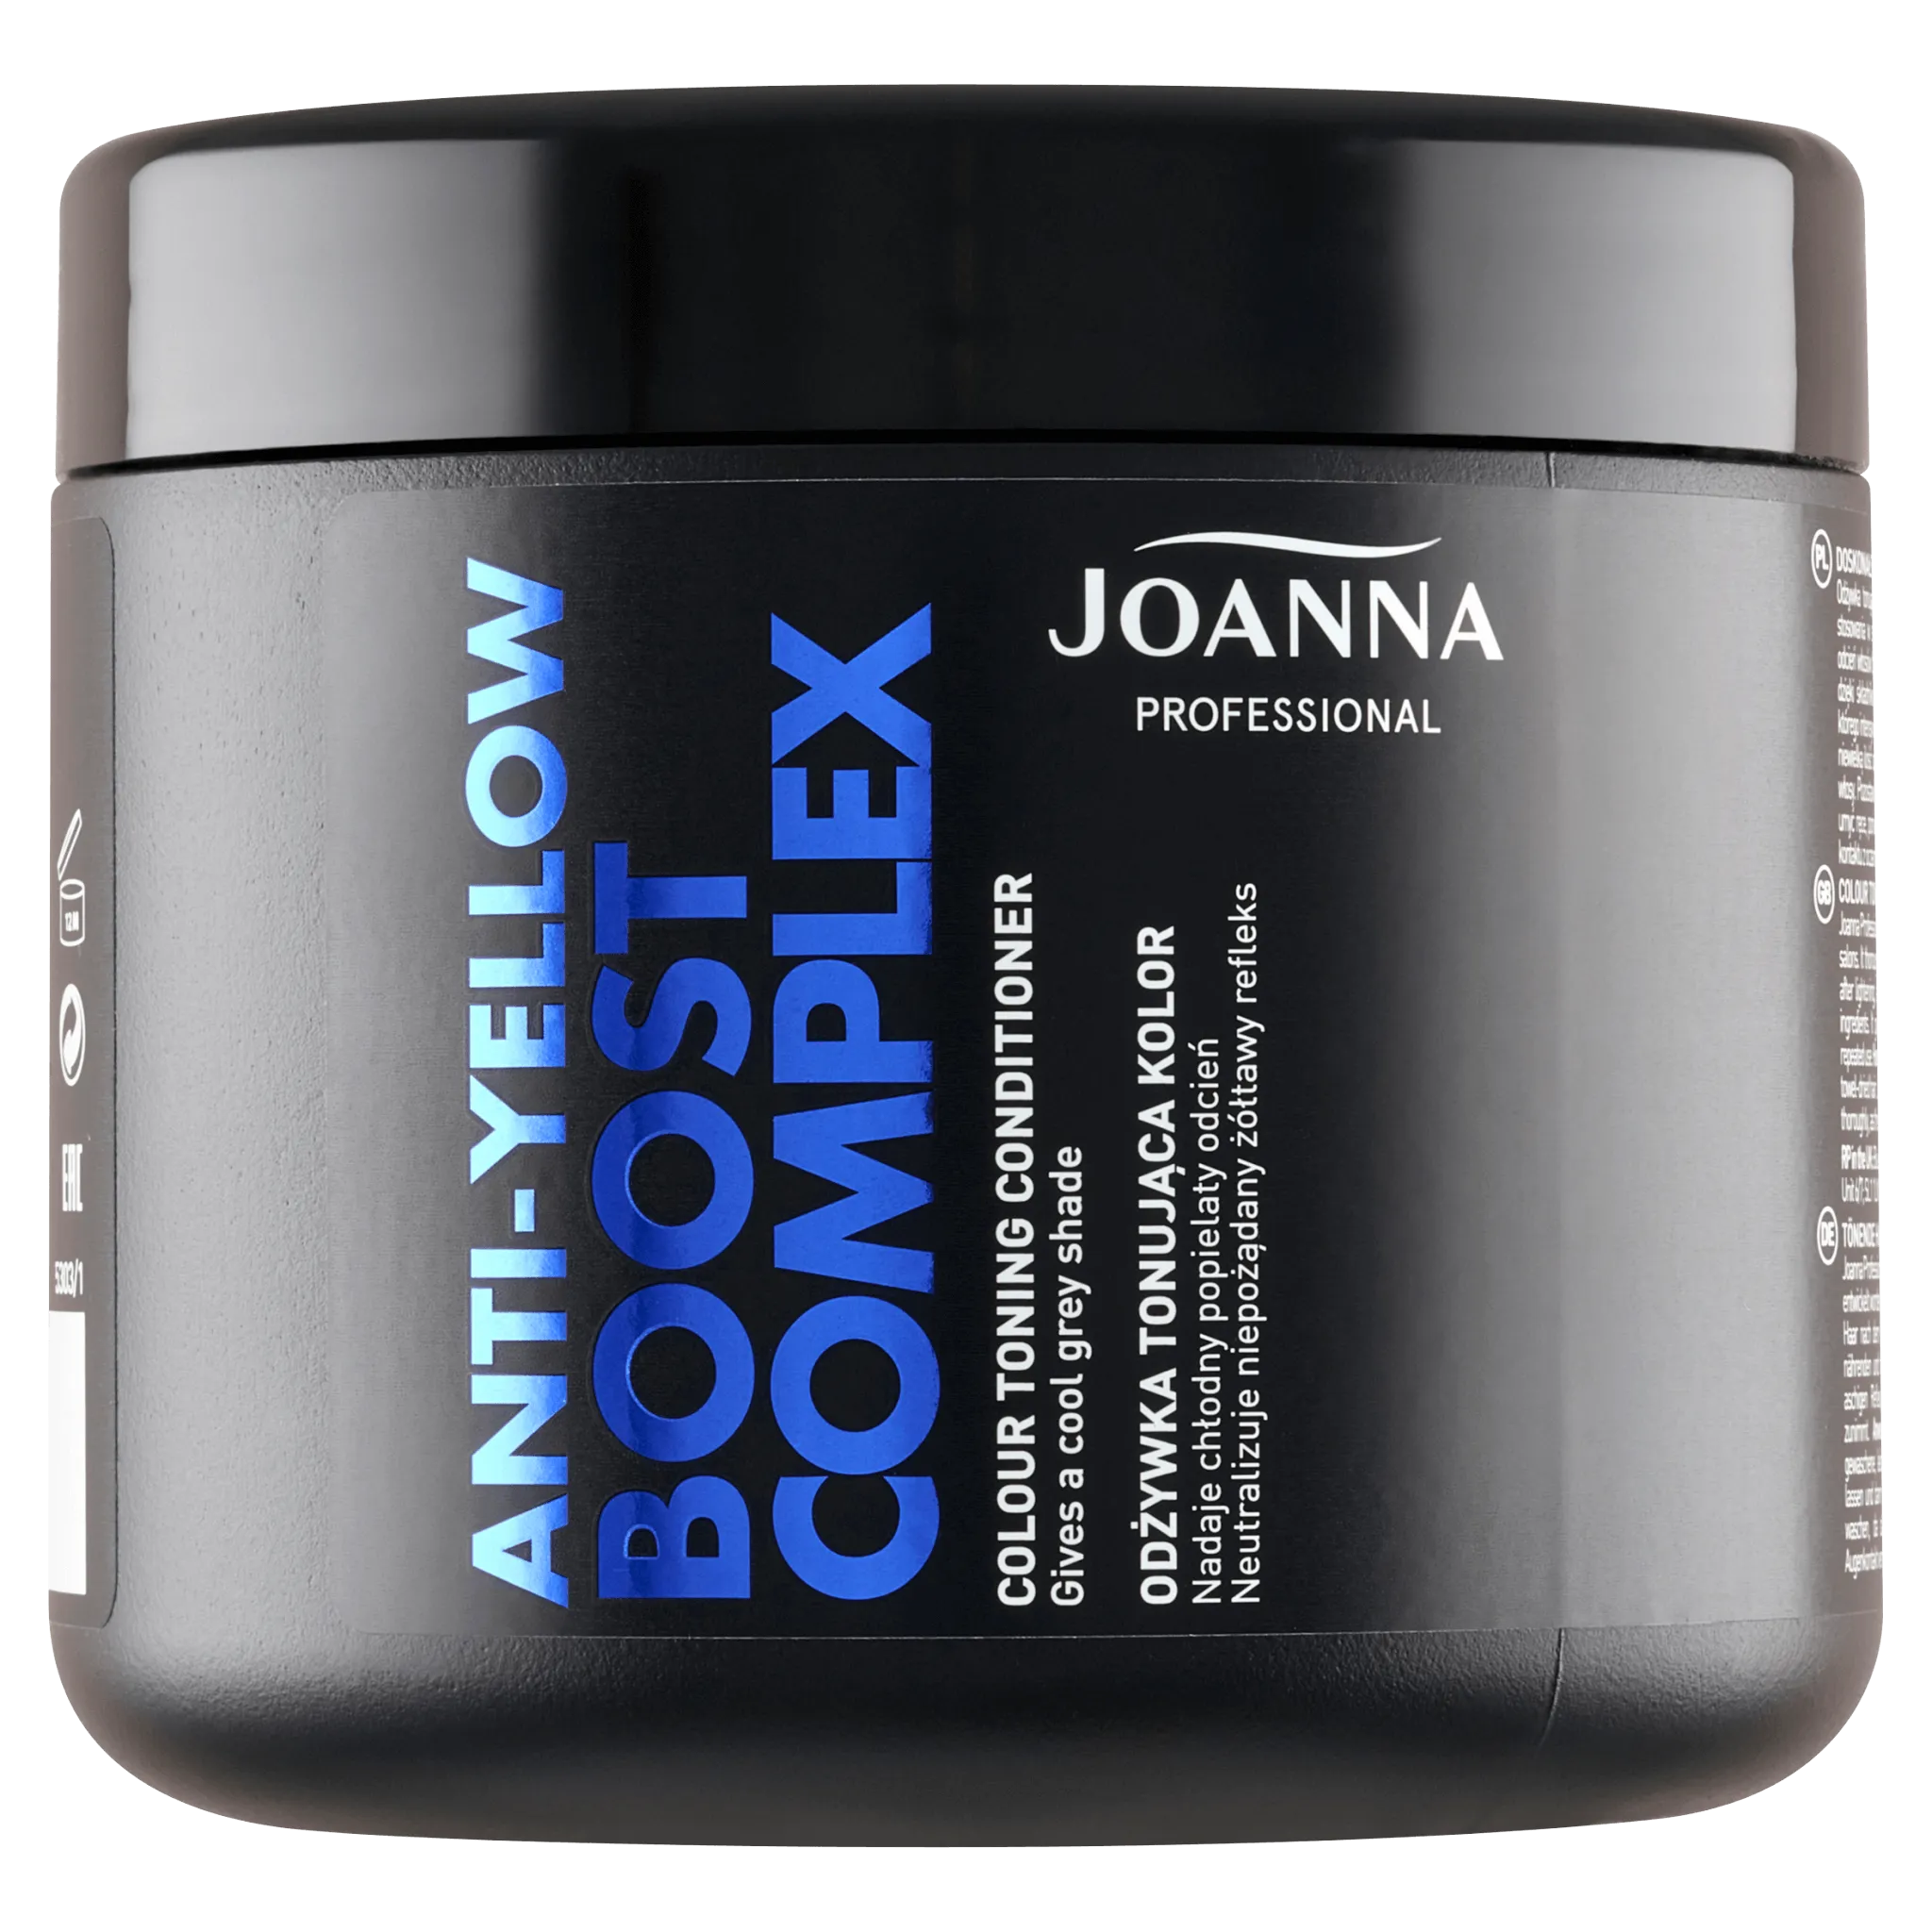 Joanna Professional, odżywka do włosów rewitalizująca kolor, 500g